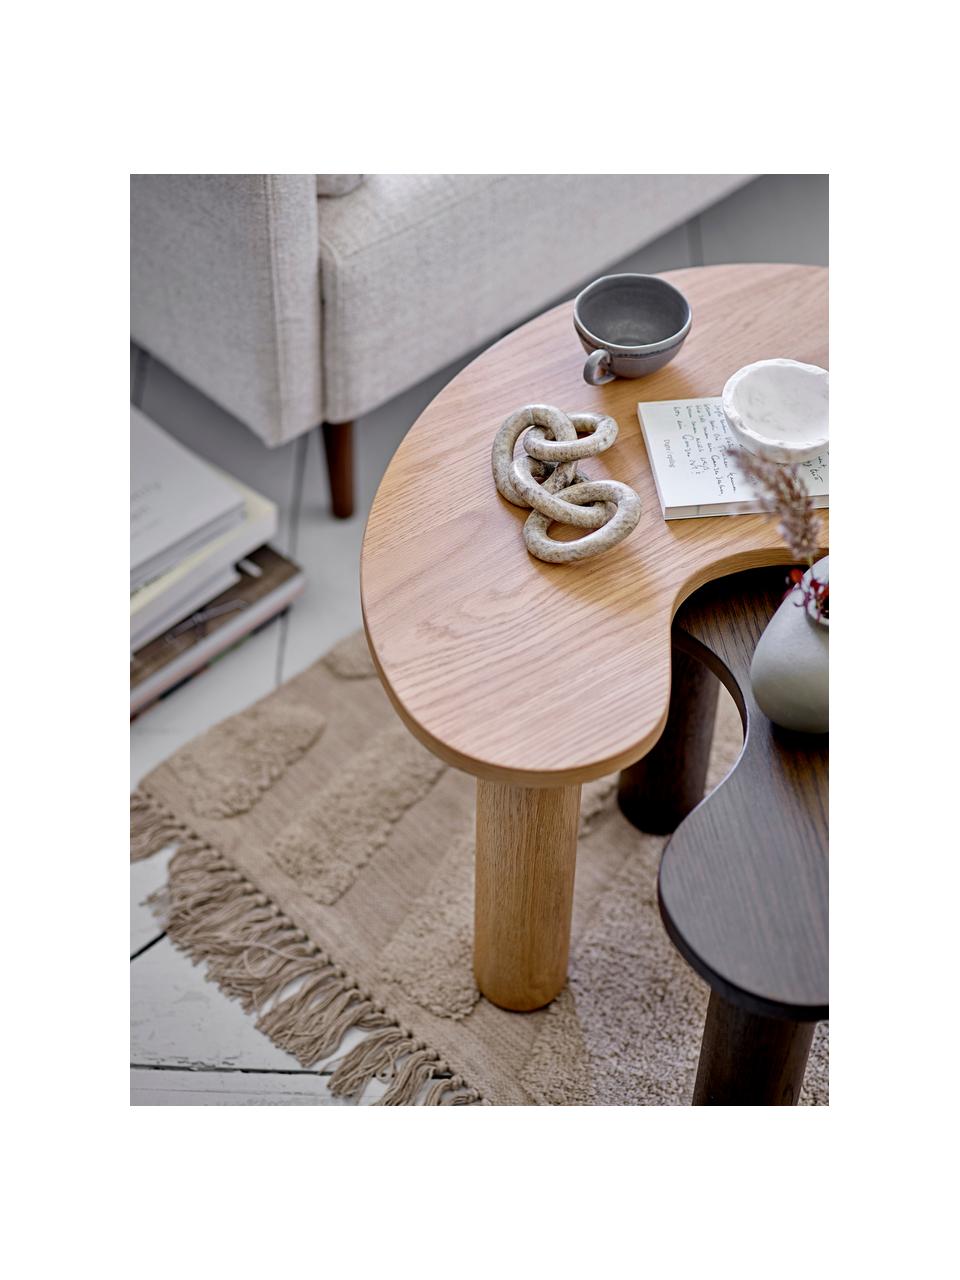 Konferenční stolek z kaučukového dřeva Luppa, Kaučukové dřevo, Kaučukové dřevo, Š 65 cm, H 44 cm